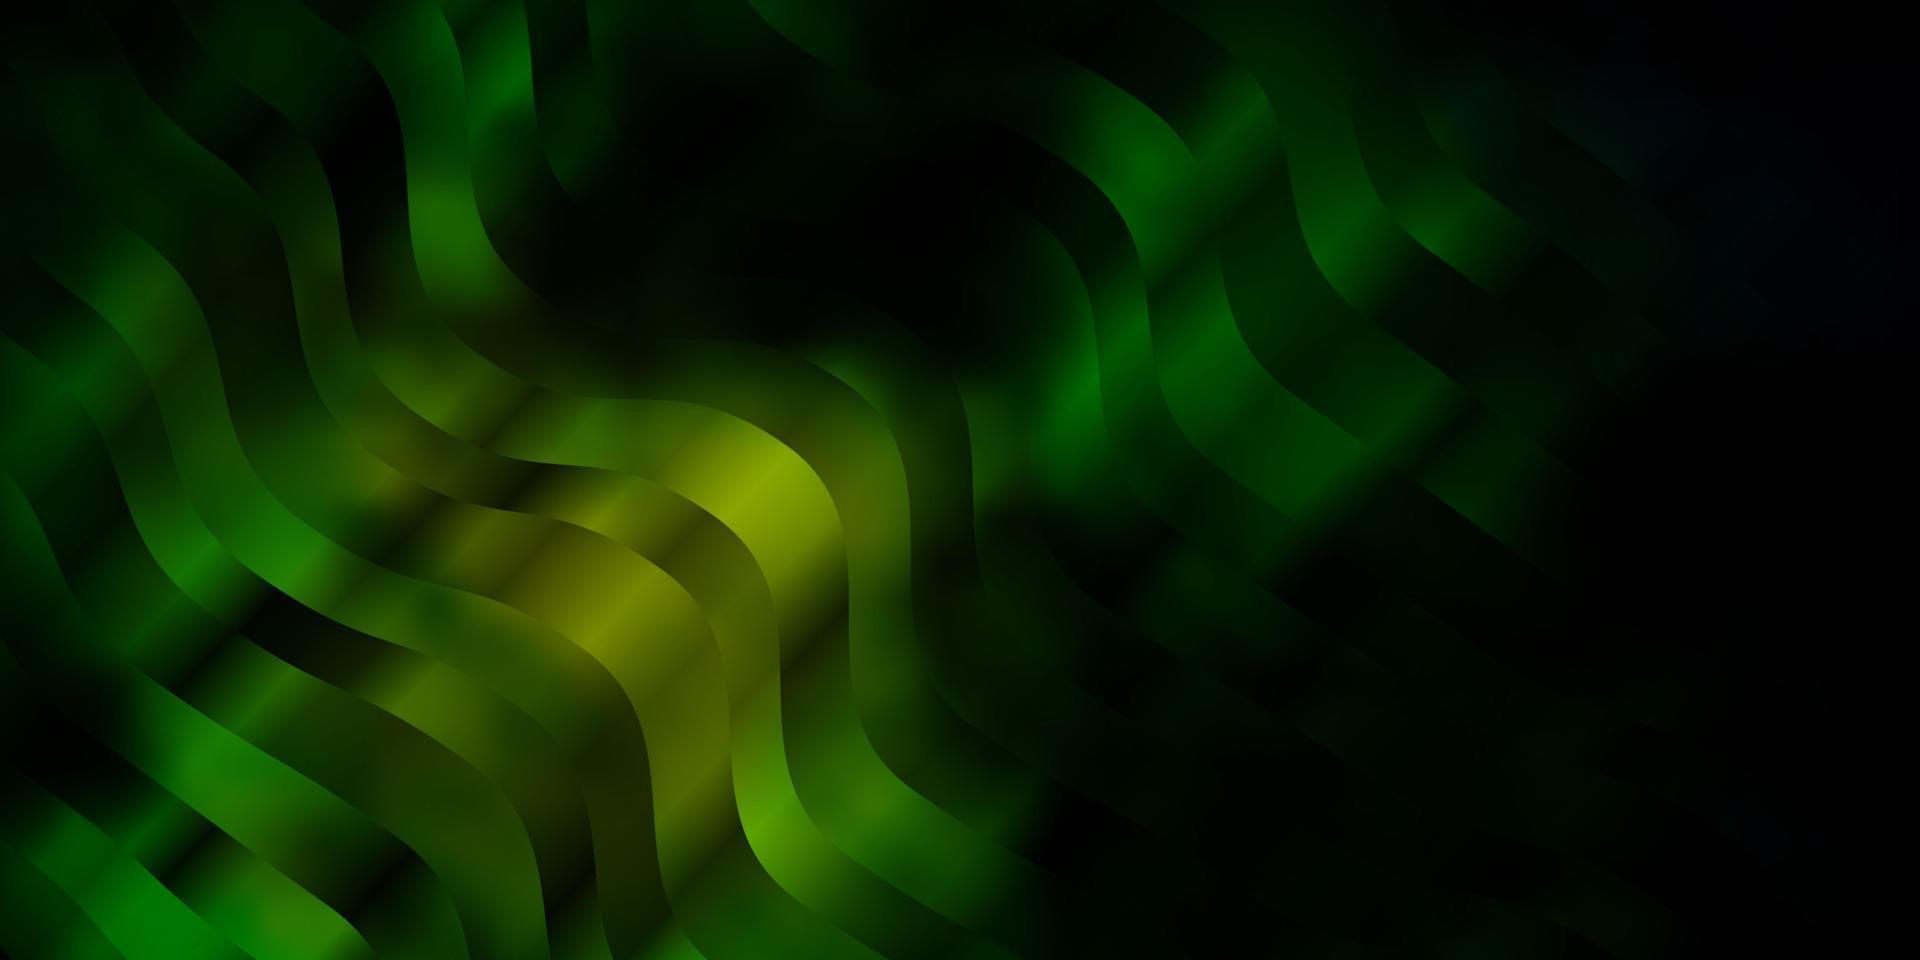 patrón de vector azul oscuro, verde con líneas torcidas.